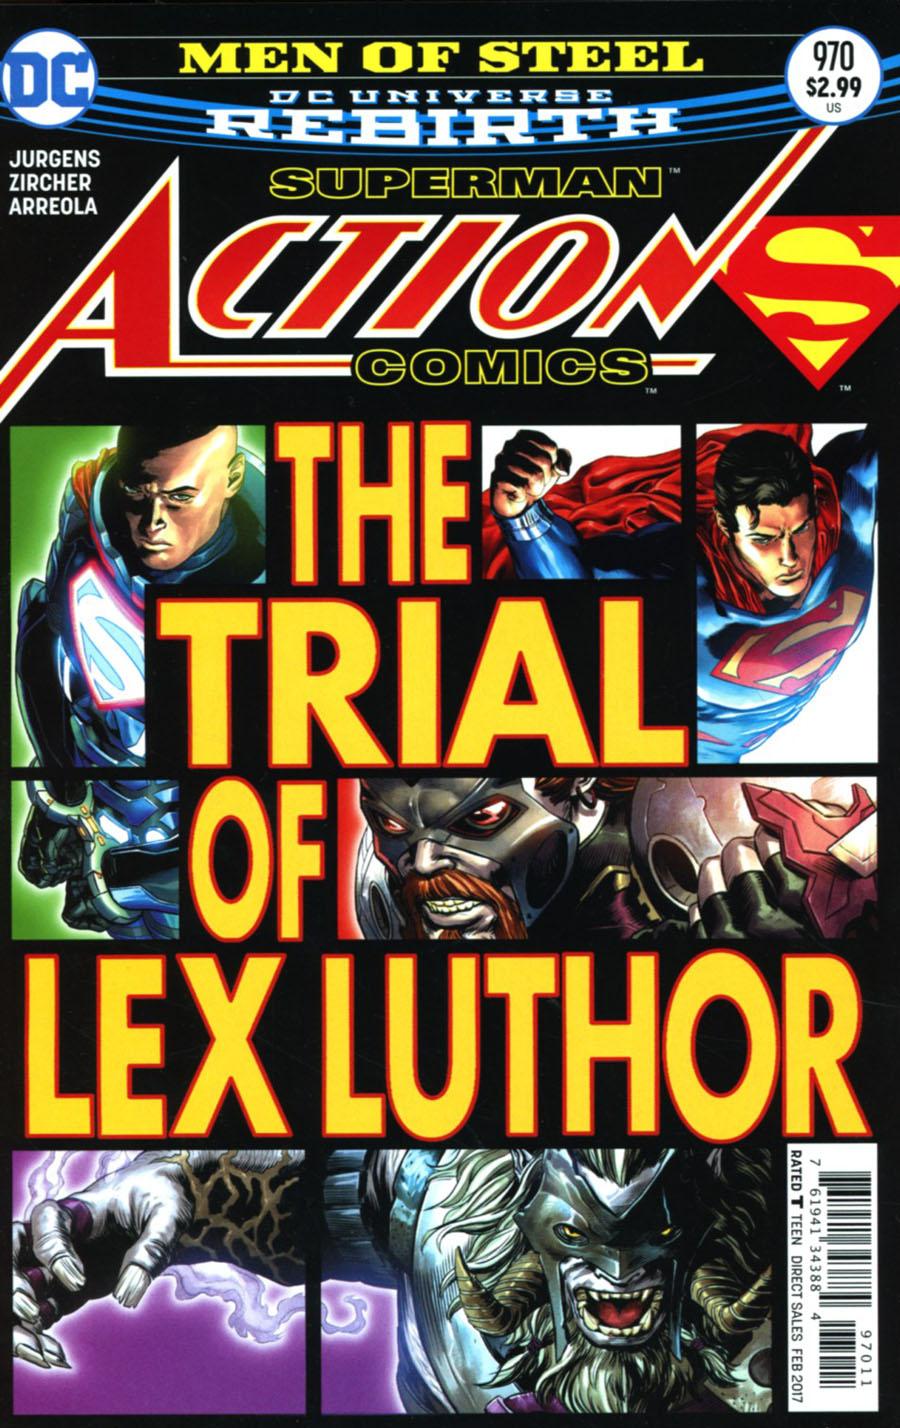 Action Comics Vol. 2 #970